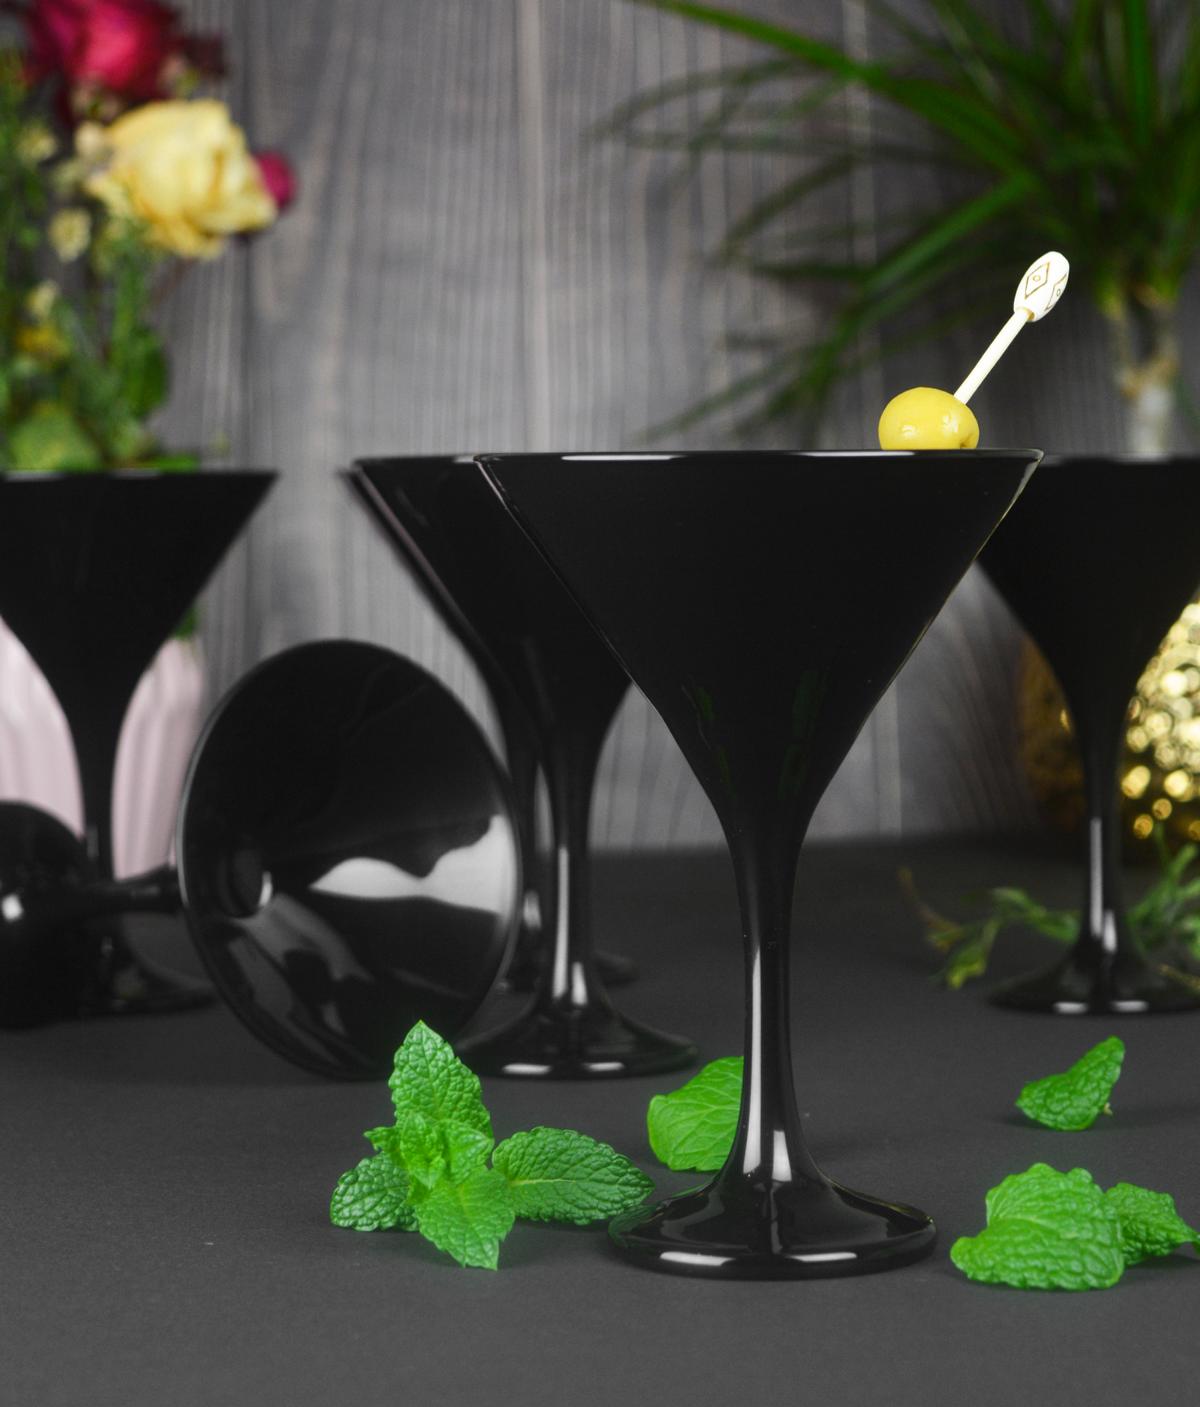 6 verres à martini noirs, bols à martini, bol à cocktail, verres à cocktail, verres à boire